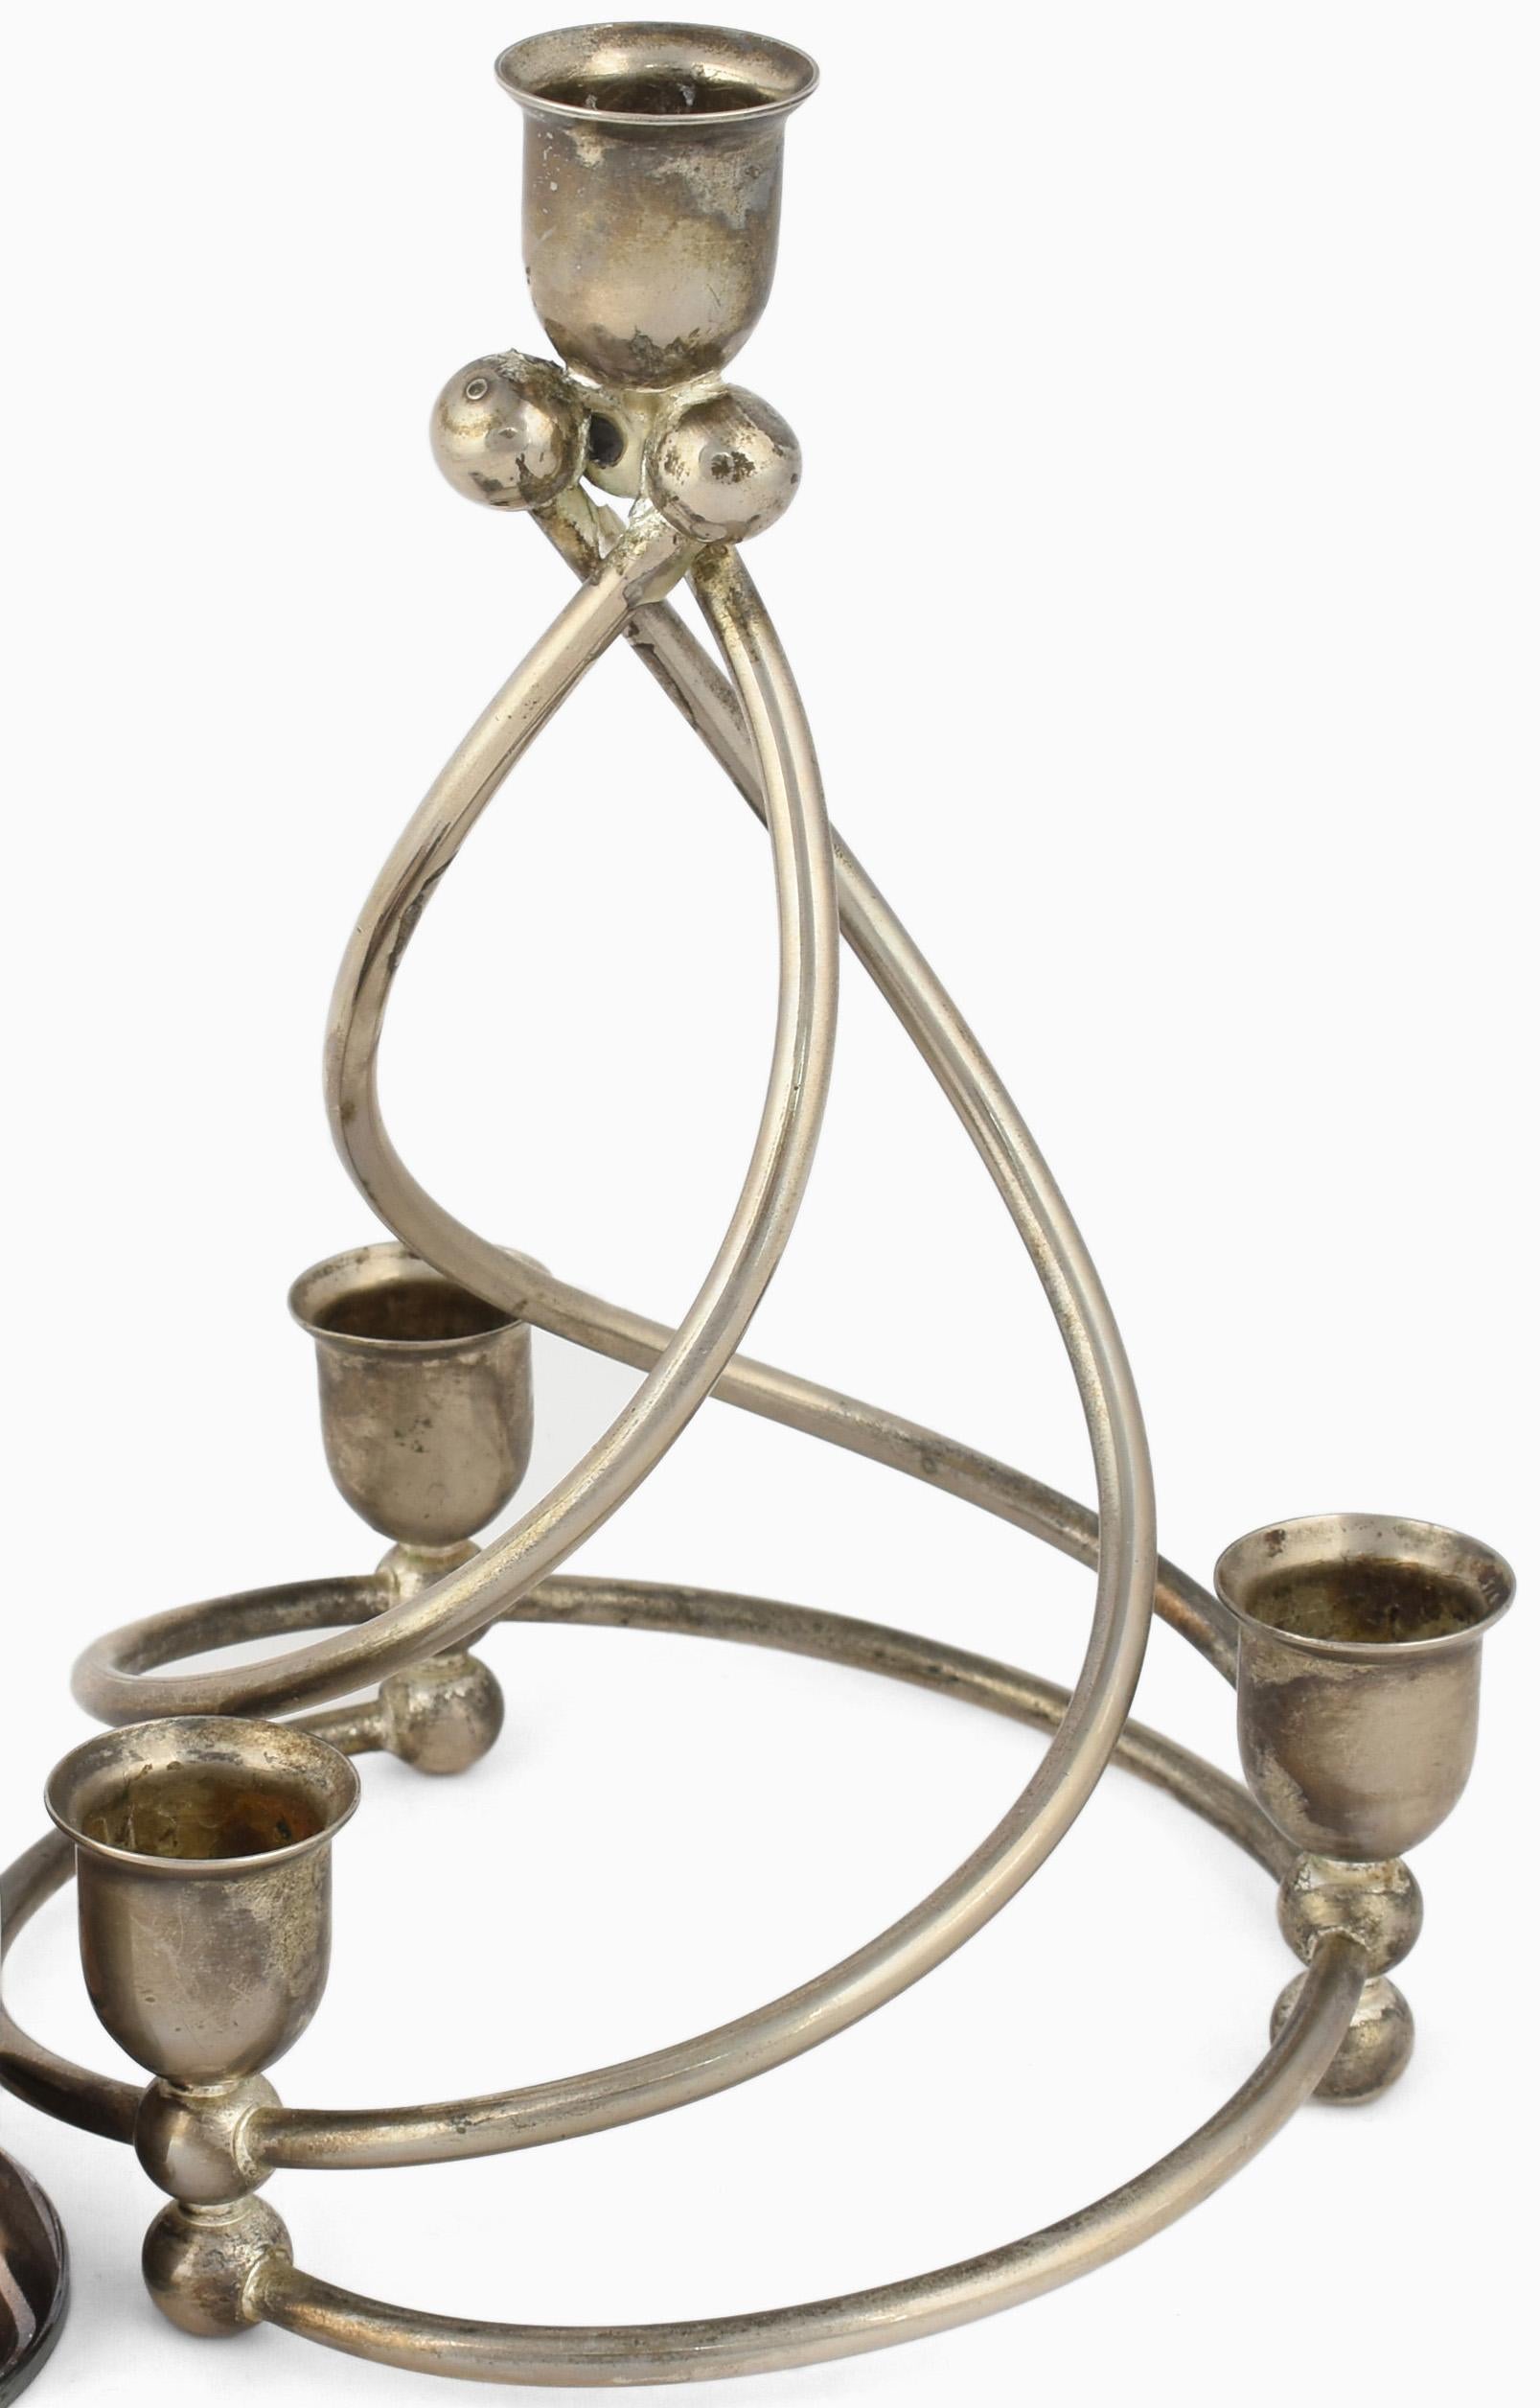 Zwei spiralförmige Kerzenständer sind ein originelles dekoratives Paar von Objekten, die in den 1920er Jahren realisiert wurden. 

Original versilbertes Metall. Das Paar besteht aus einem versilberten Kerzenständer (H. 8 cm) und einem